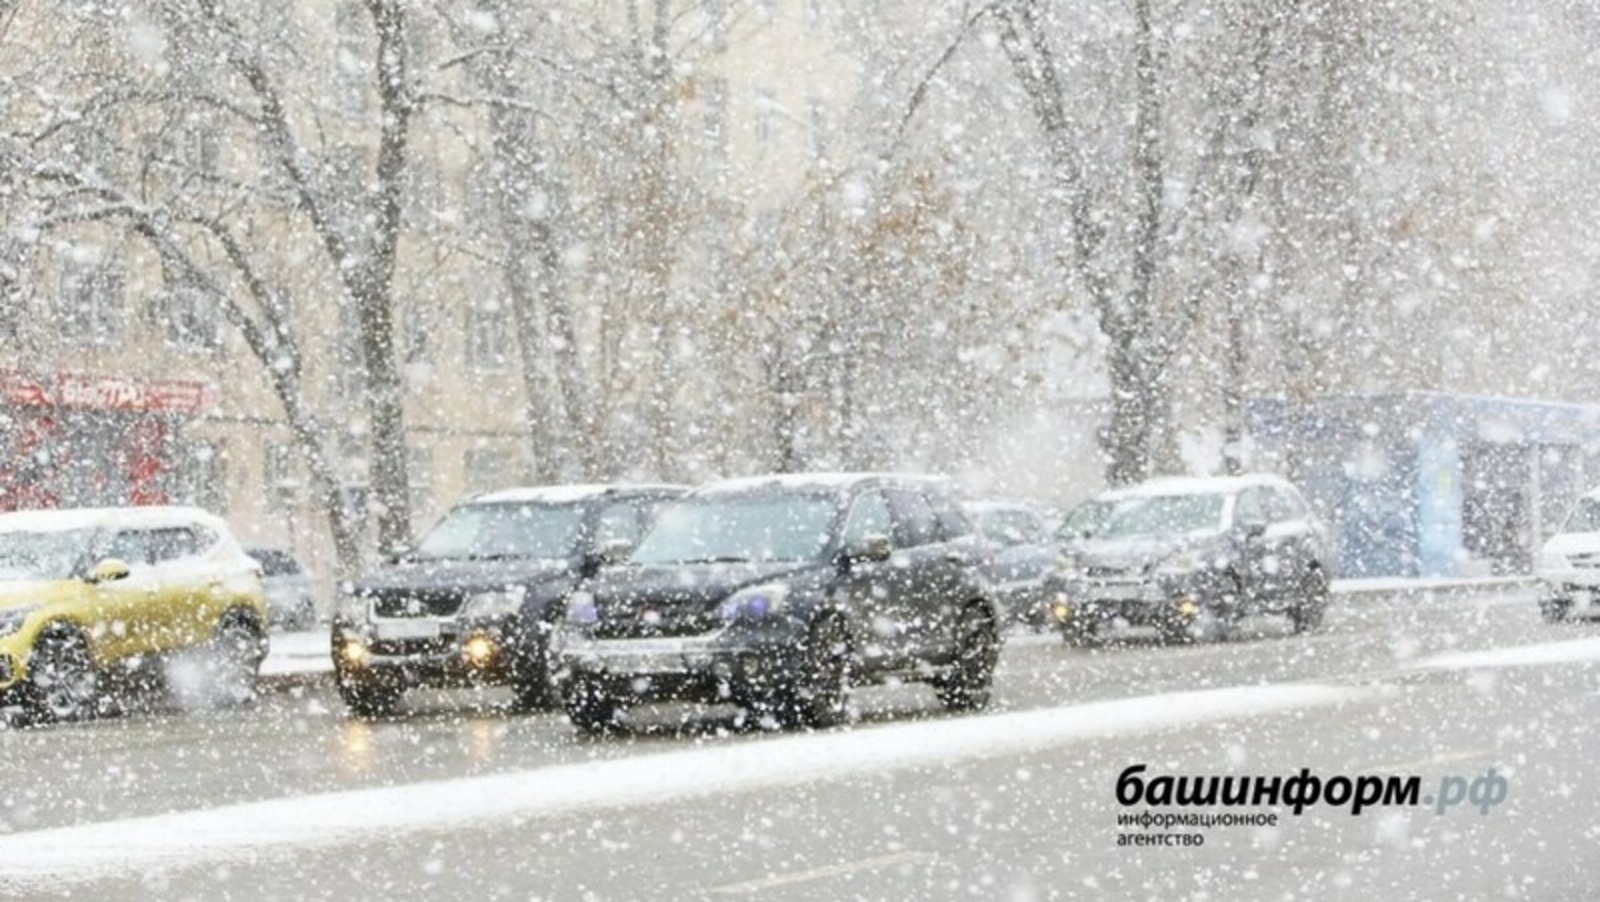 Жителей Башкирии предупреждают о крайне неблагоприятных погодных условиях